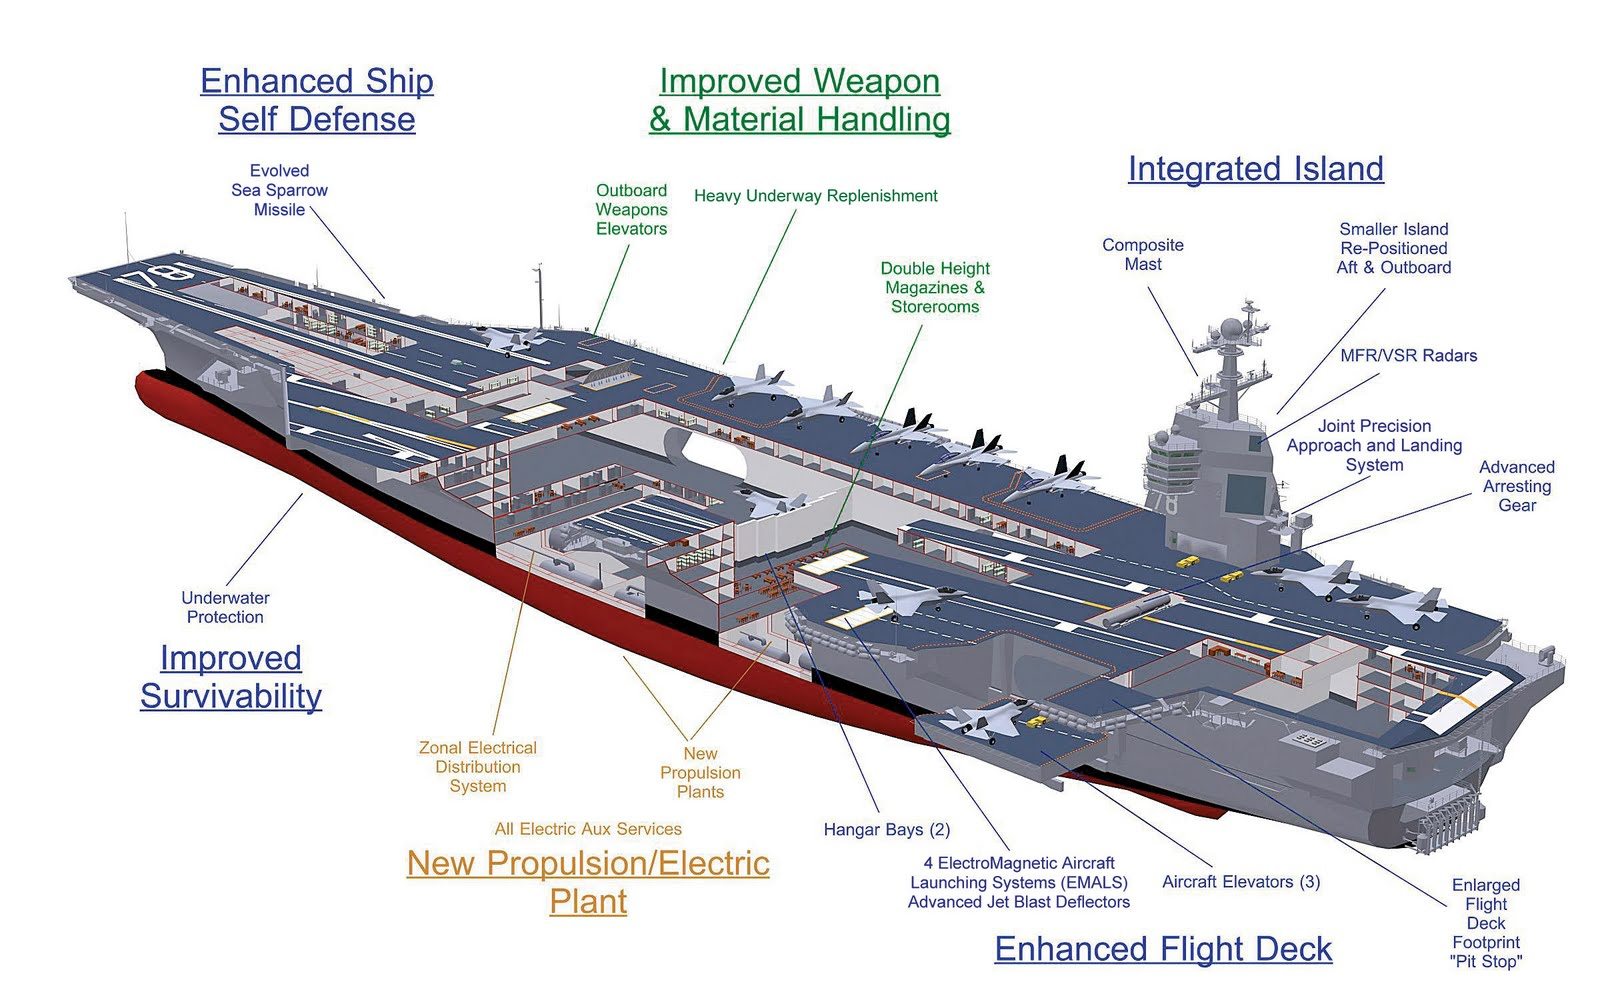 Uss gerald r ford class aircraft carrier